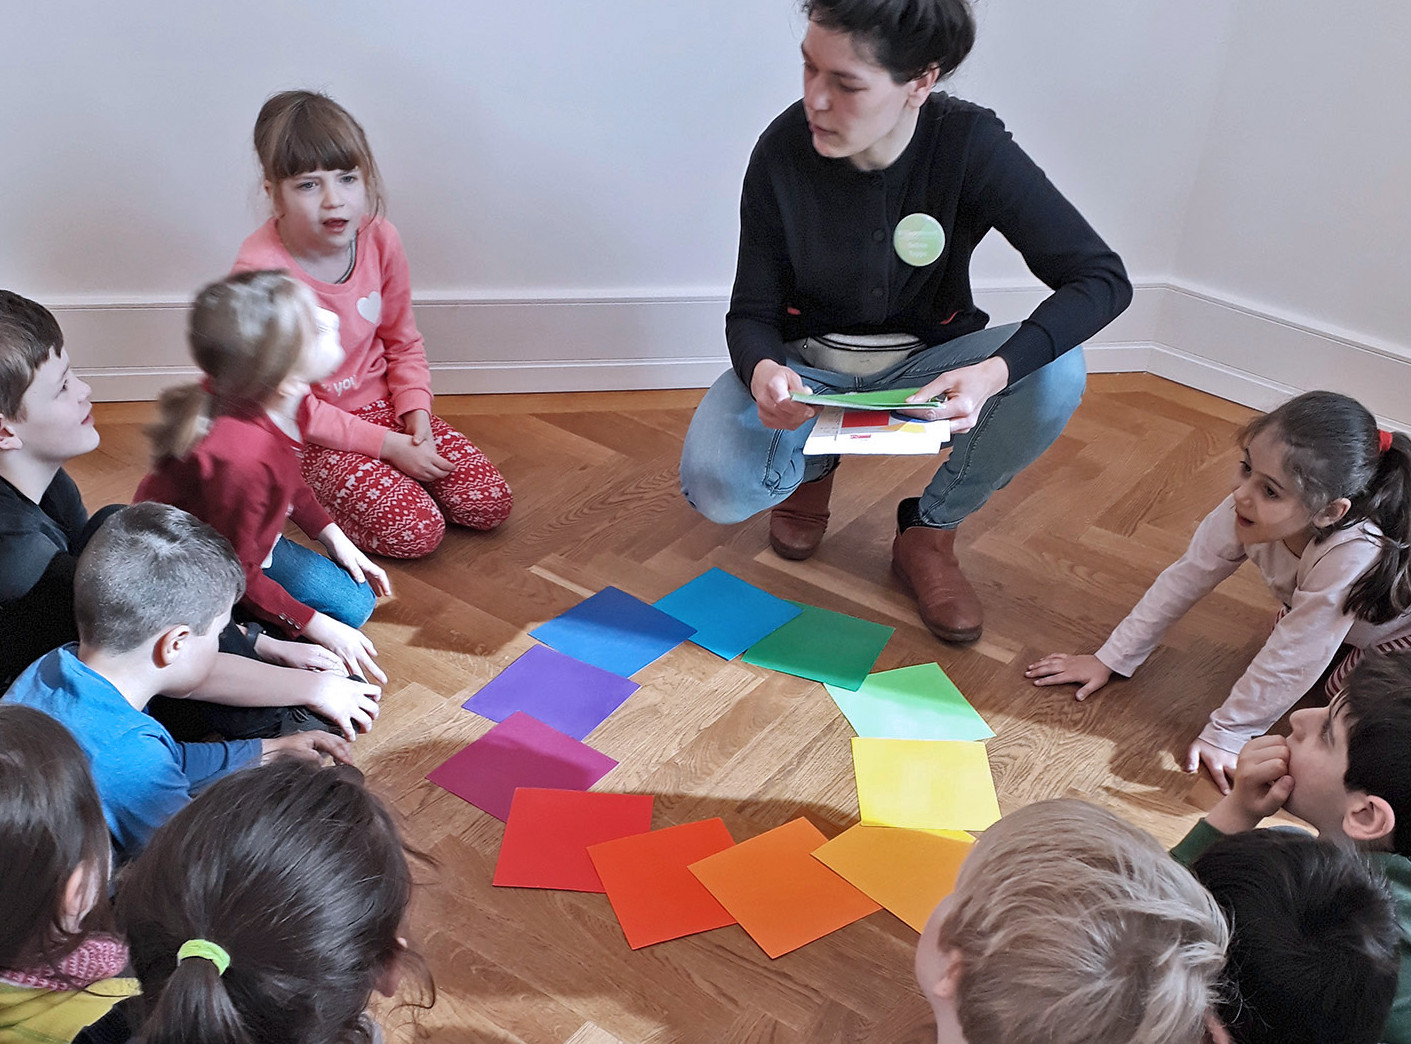 Die Abbildung zeigt Kinder einer Grundschulklasse, die sich im Kreis sitzend über am Boden liegende Farbbeispiele austauschen. Die Fotoaufnahme stammt von M. F.